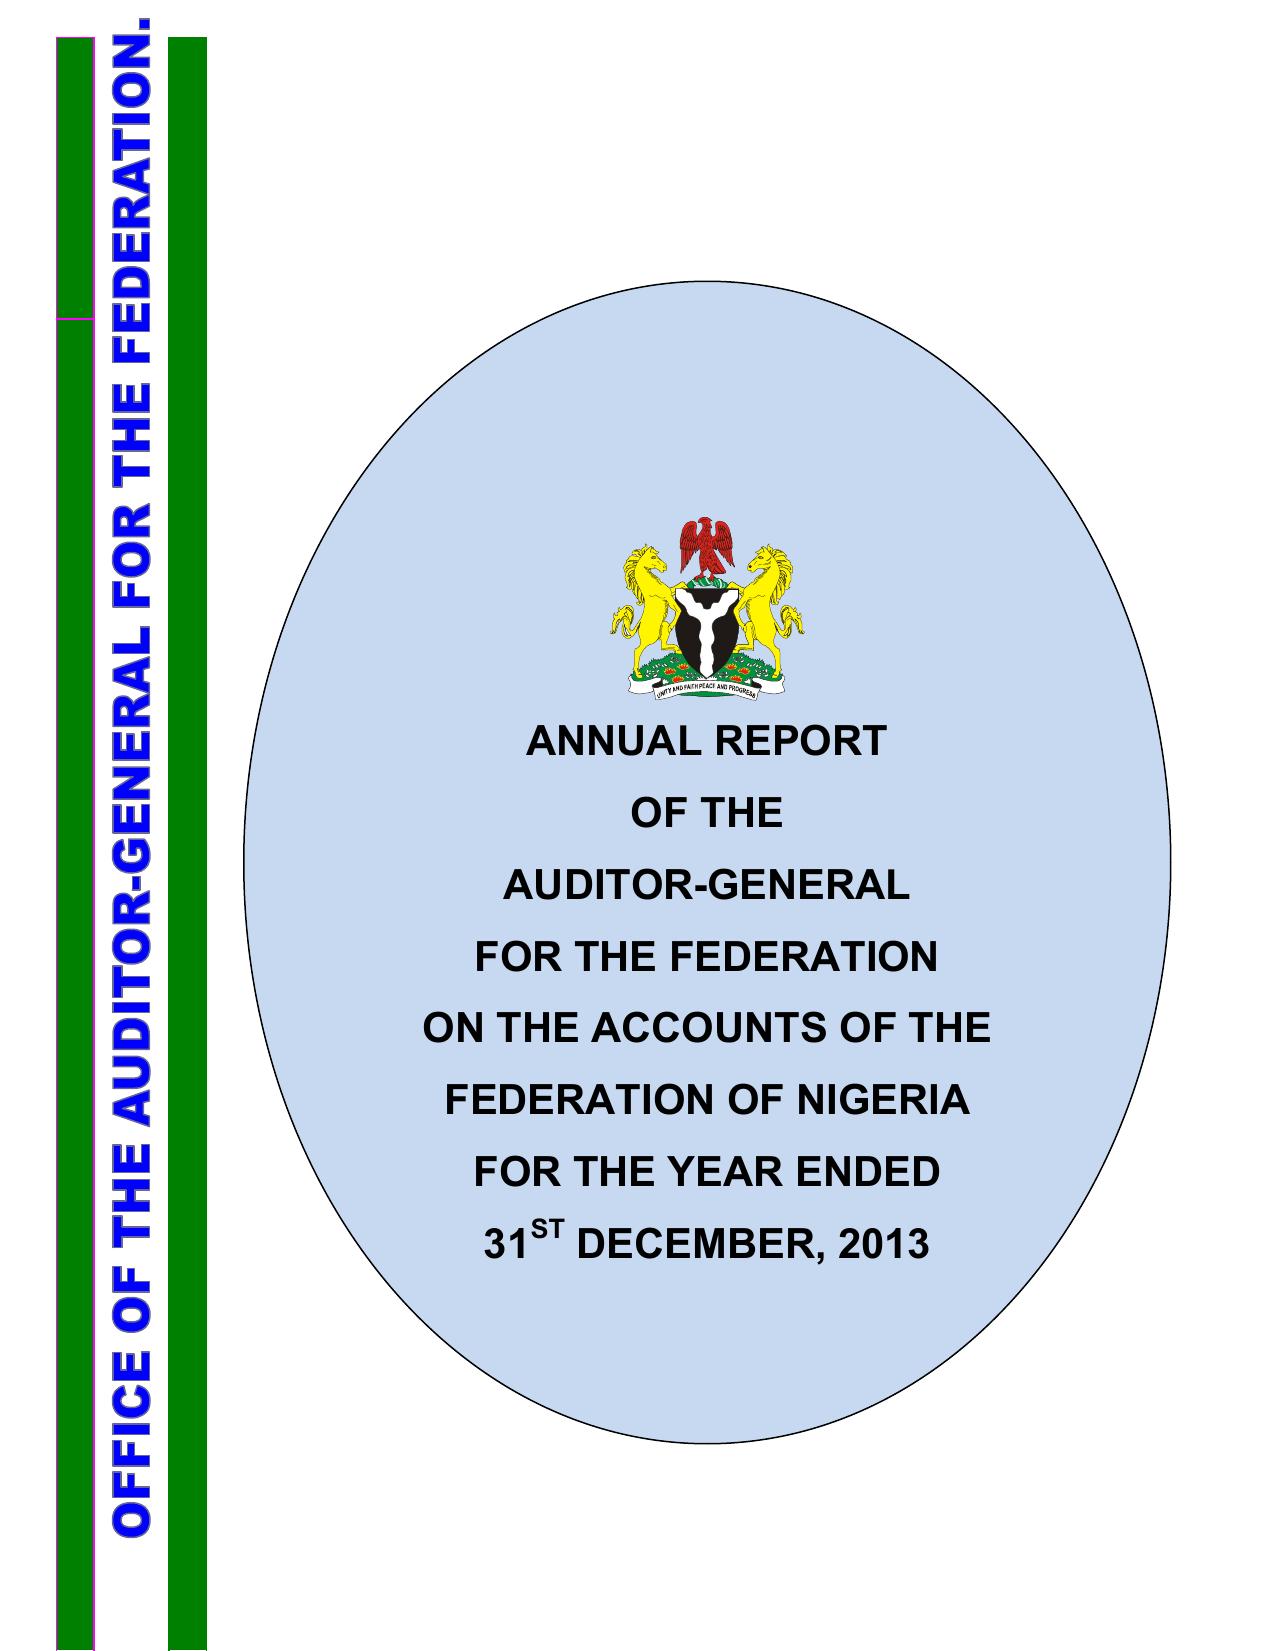 annual report AuGF Nigeria 2013